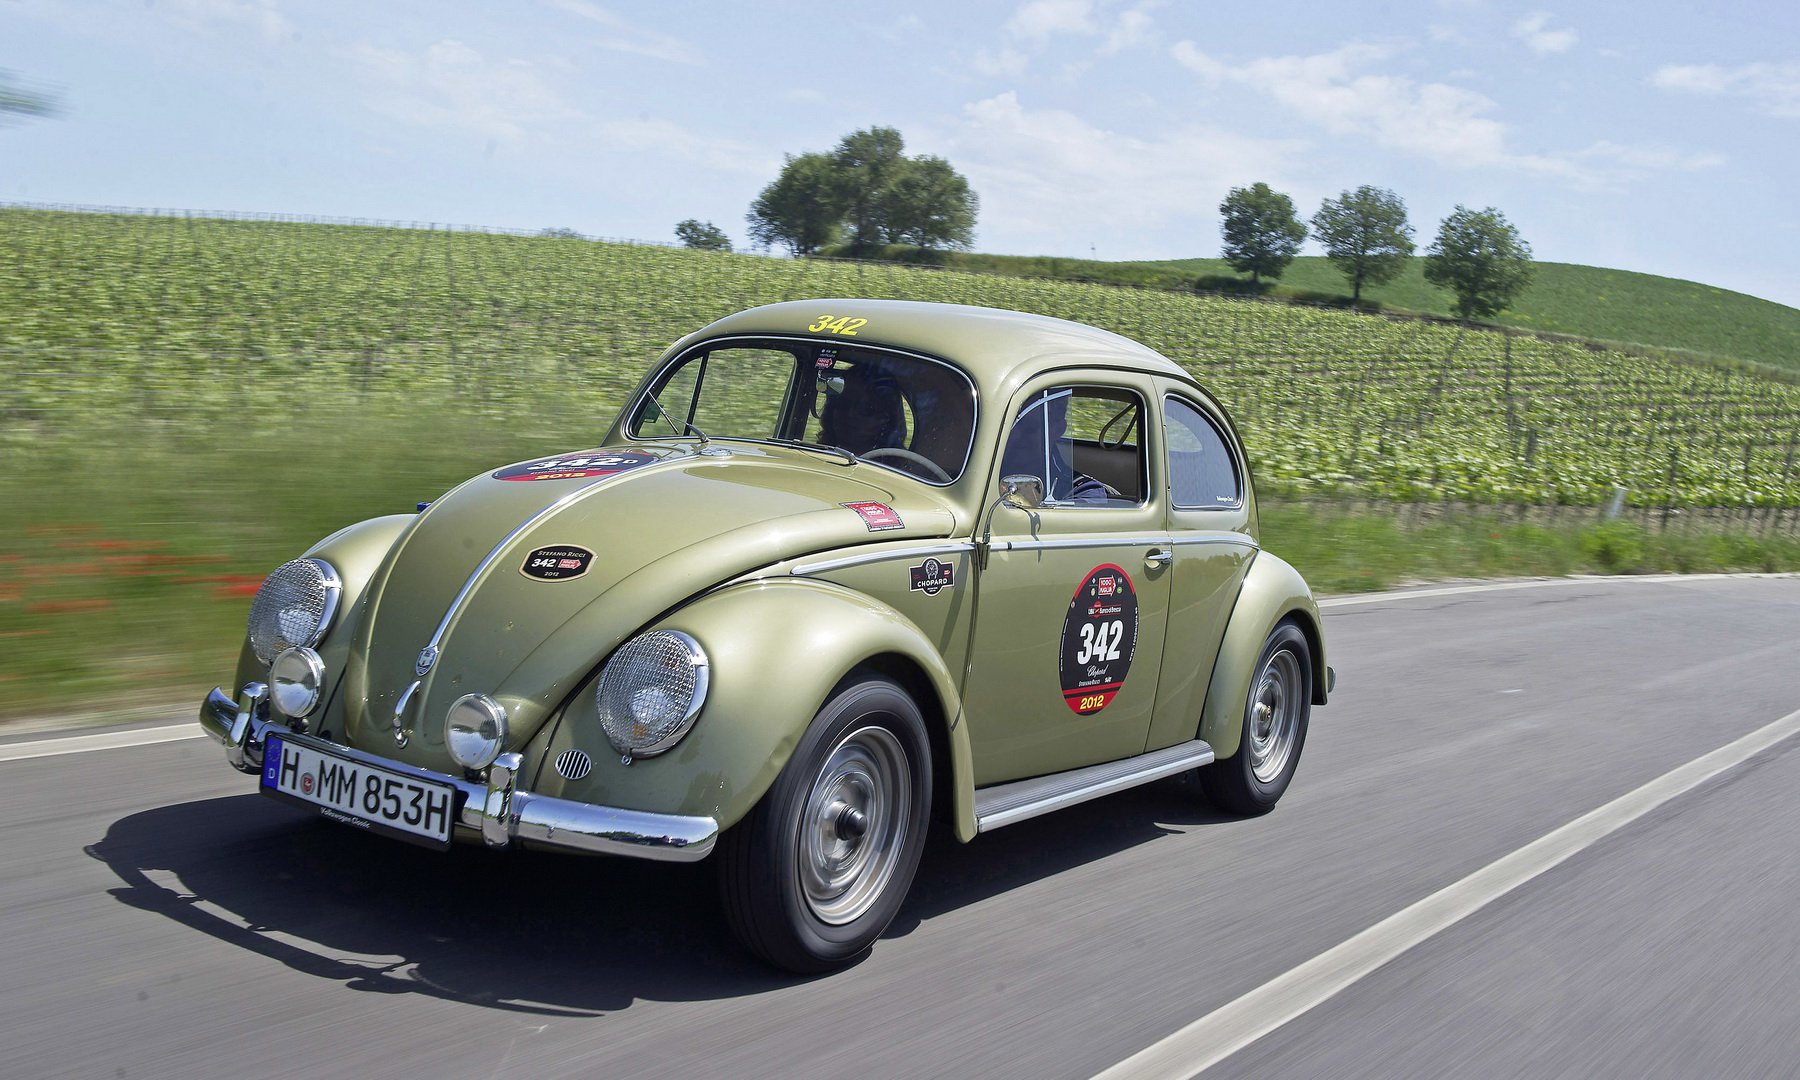 hypothese Behoren Verdwijnen Volkswagen Kever neemt afscheid, racet mee in Mille Miglia